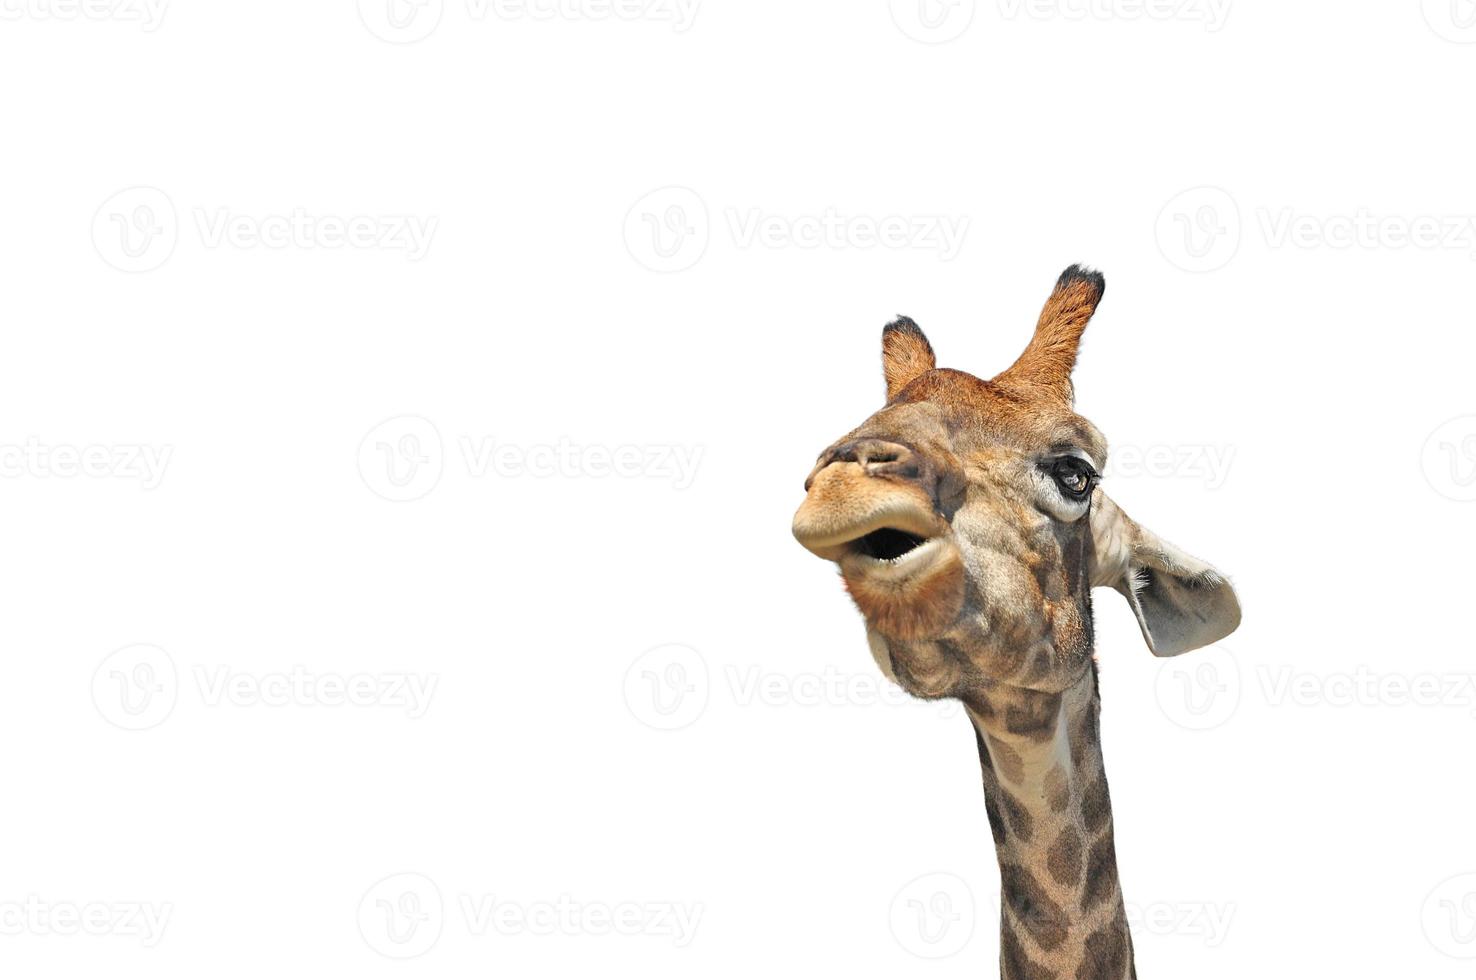 cabeça de girafa em um fundo branco. retrato de um animal. elemento para design foto